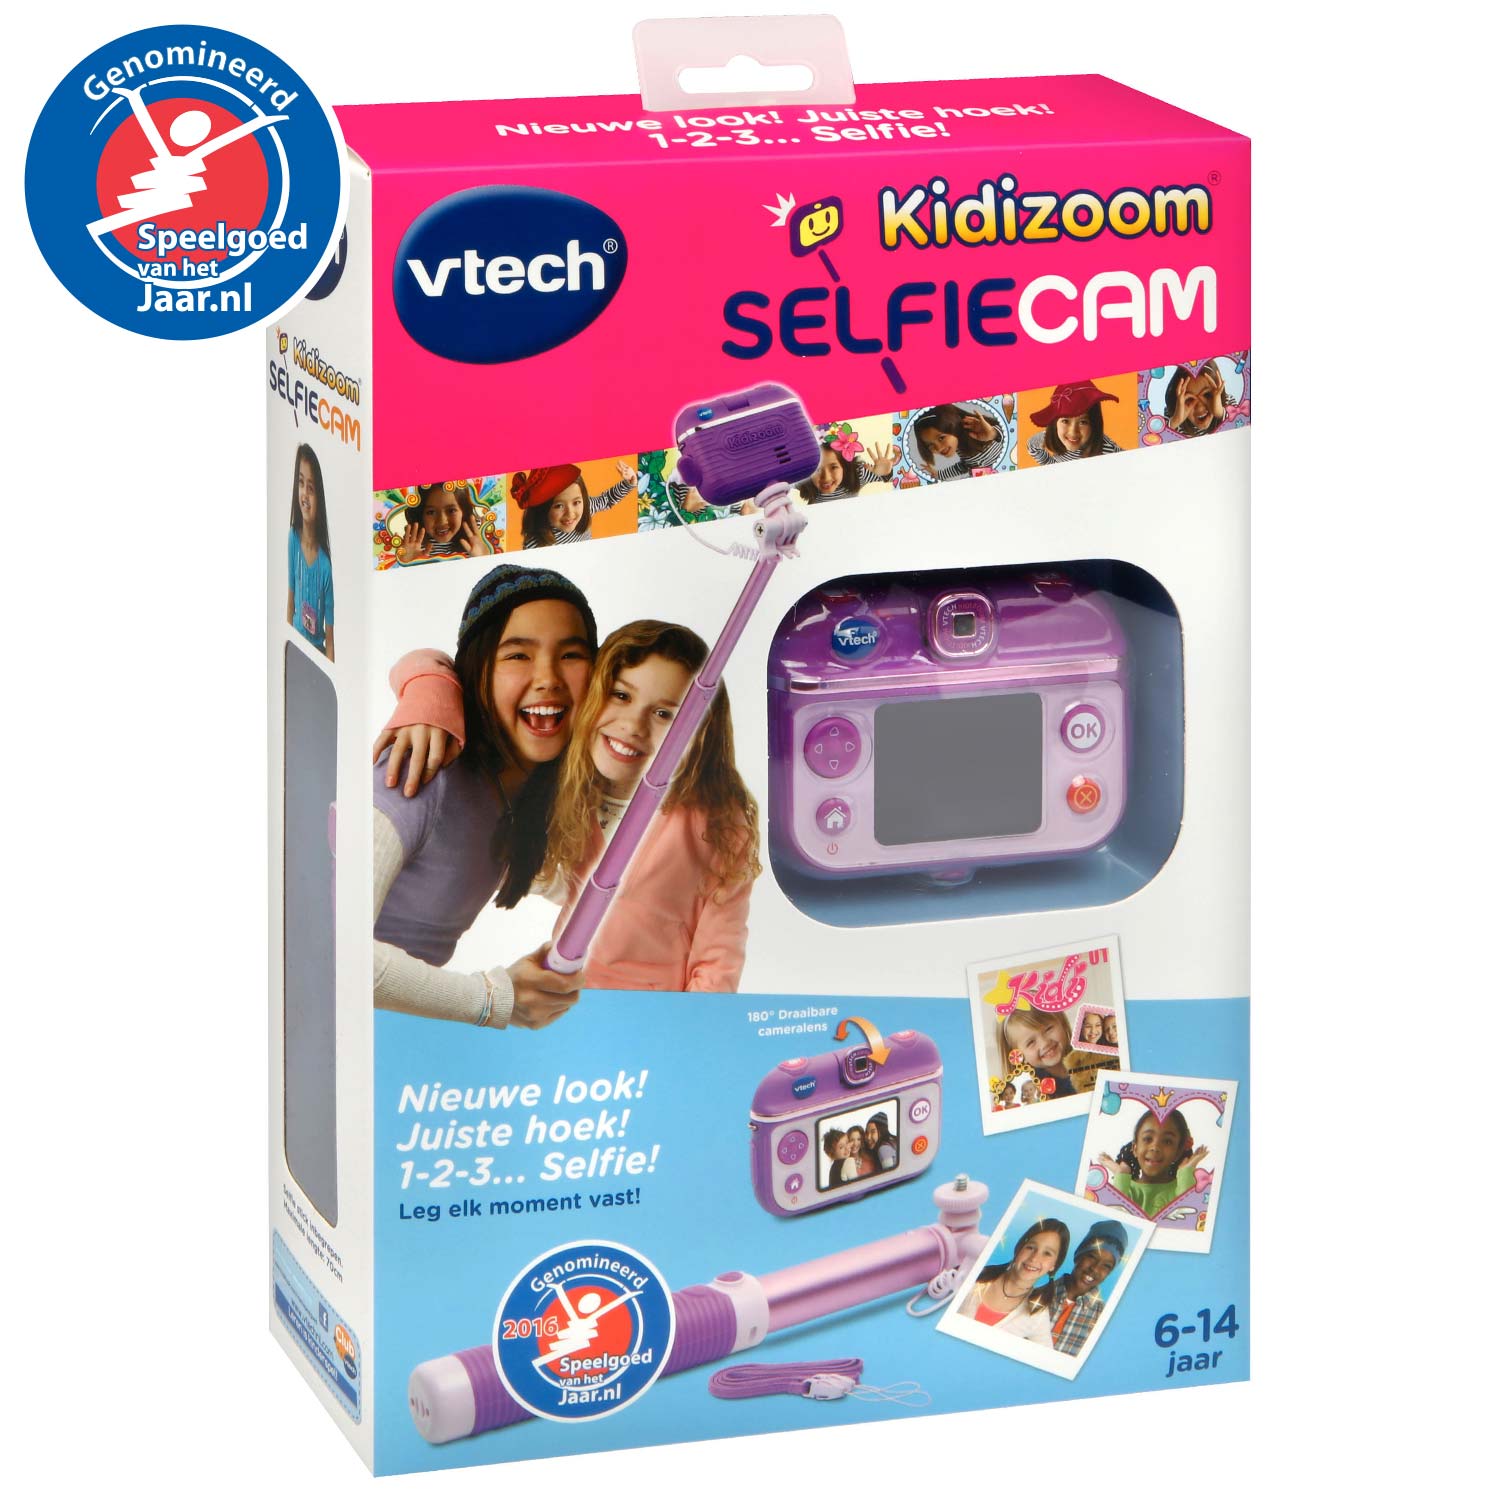 uitslag Diakritisch Oppervlakte Vtech Kidizoom Selfie Cam | Thimble Toys